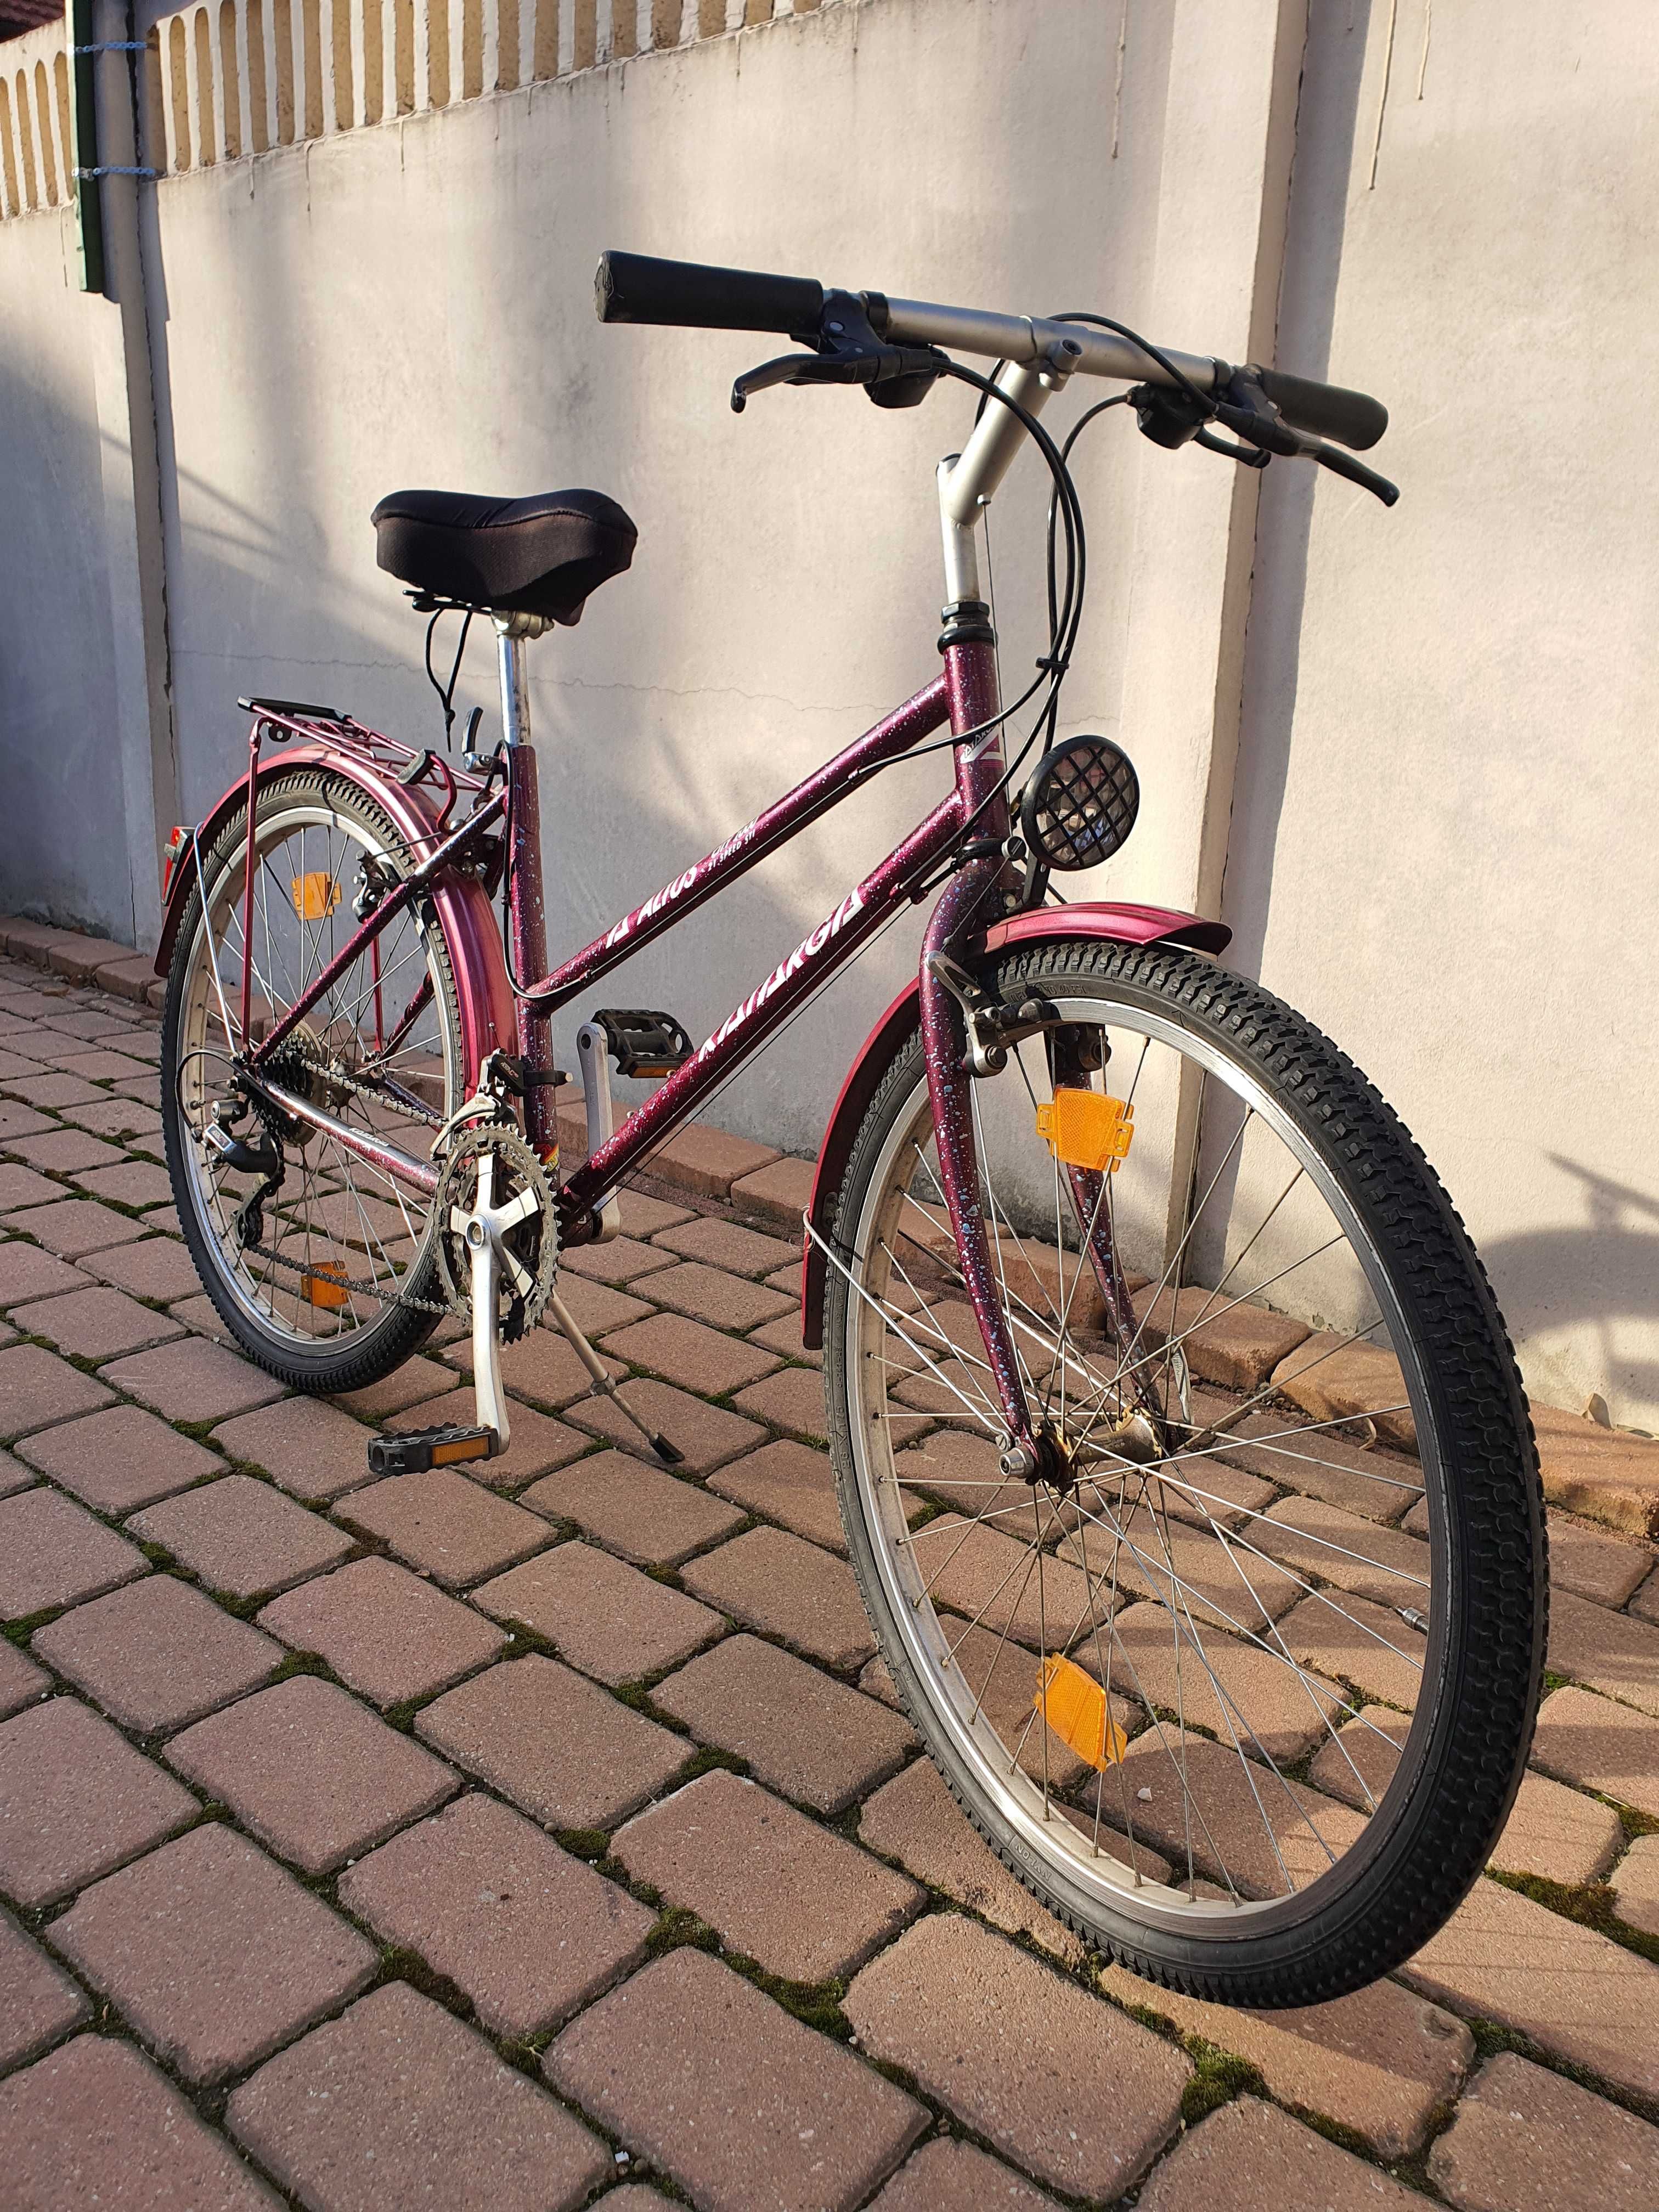 Bicicleta dama 26"